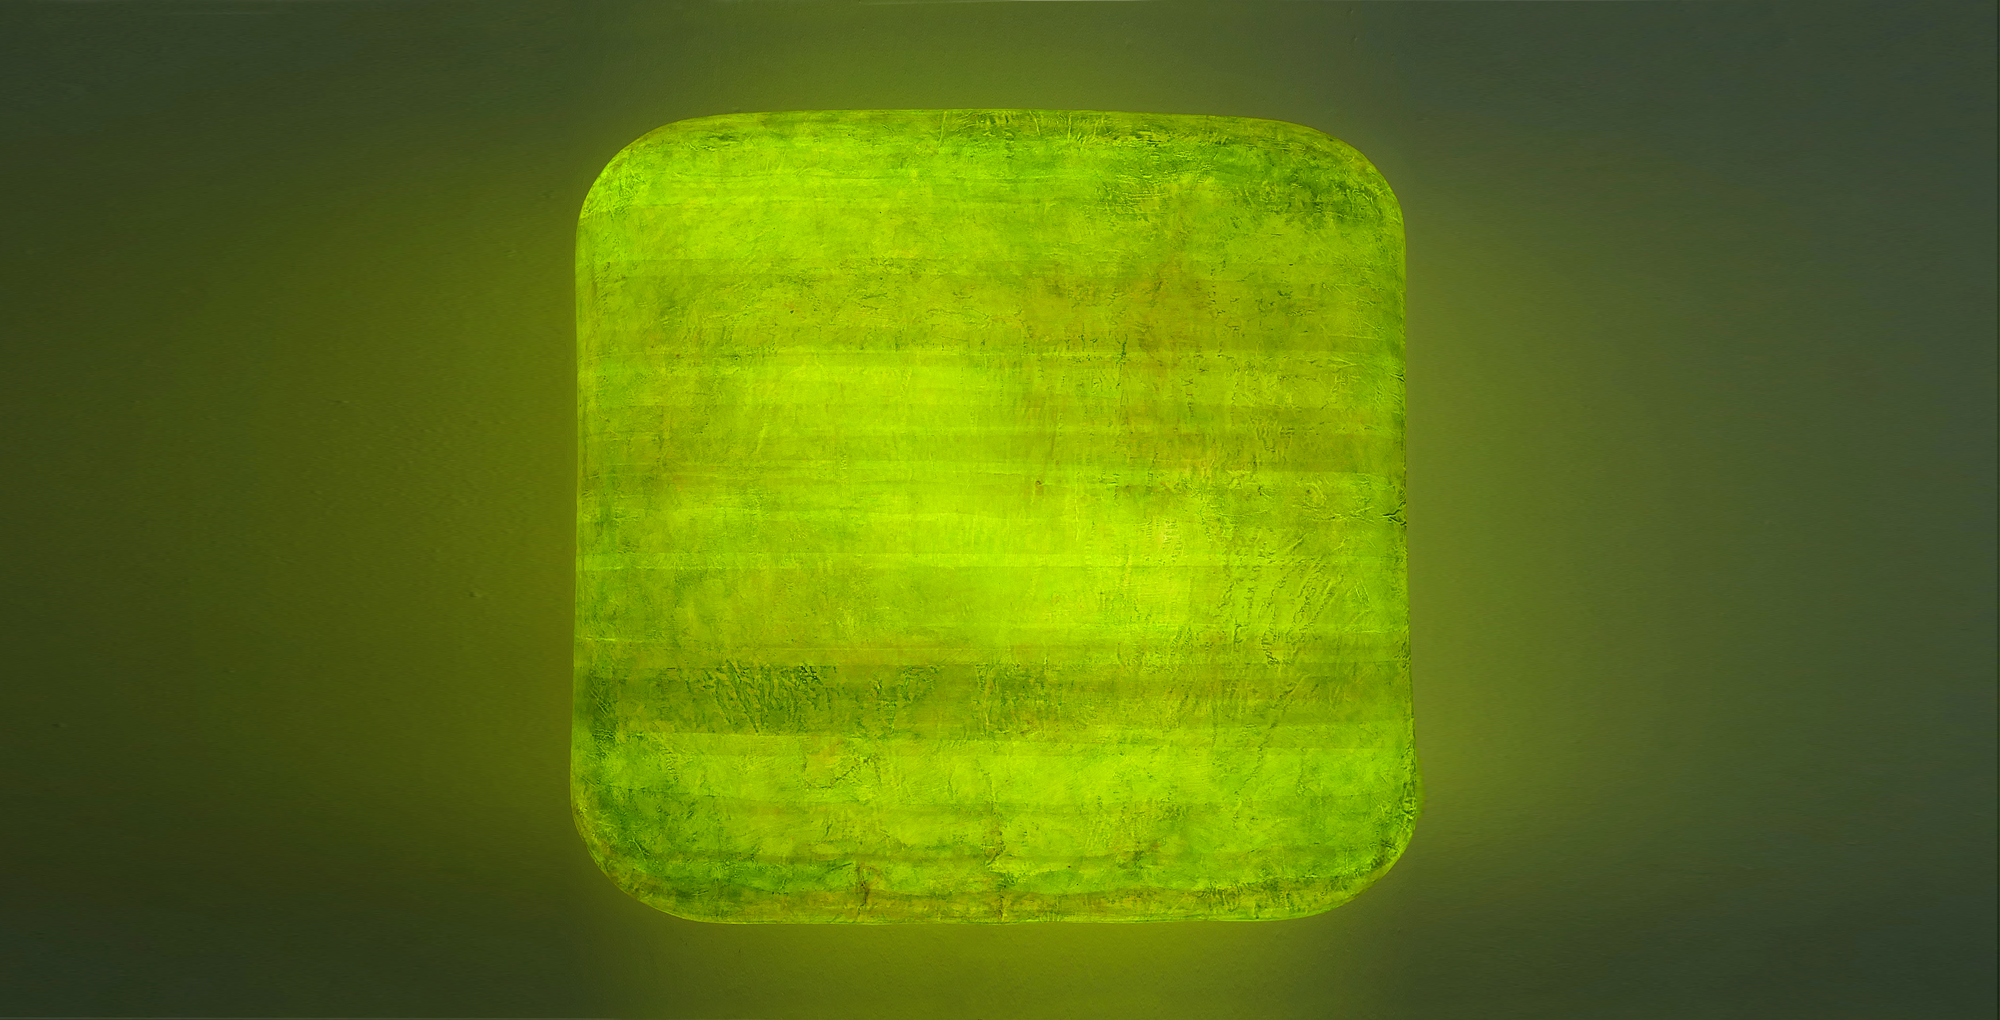 Leuchtobjekt – Ölfarbe auf Papier, 84 x 84 x 23 cm I 2018